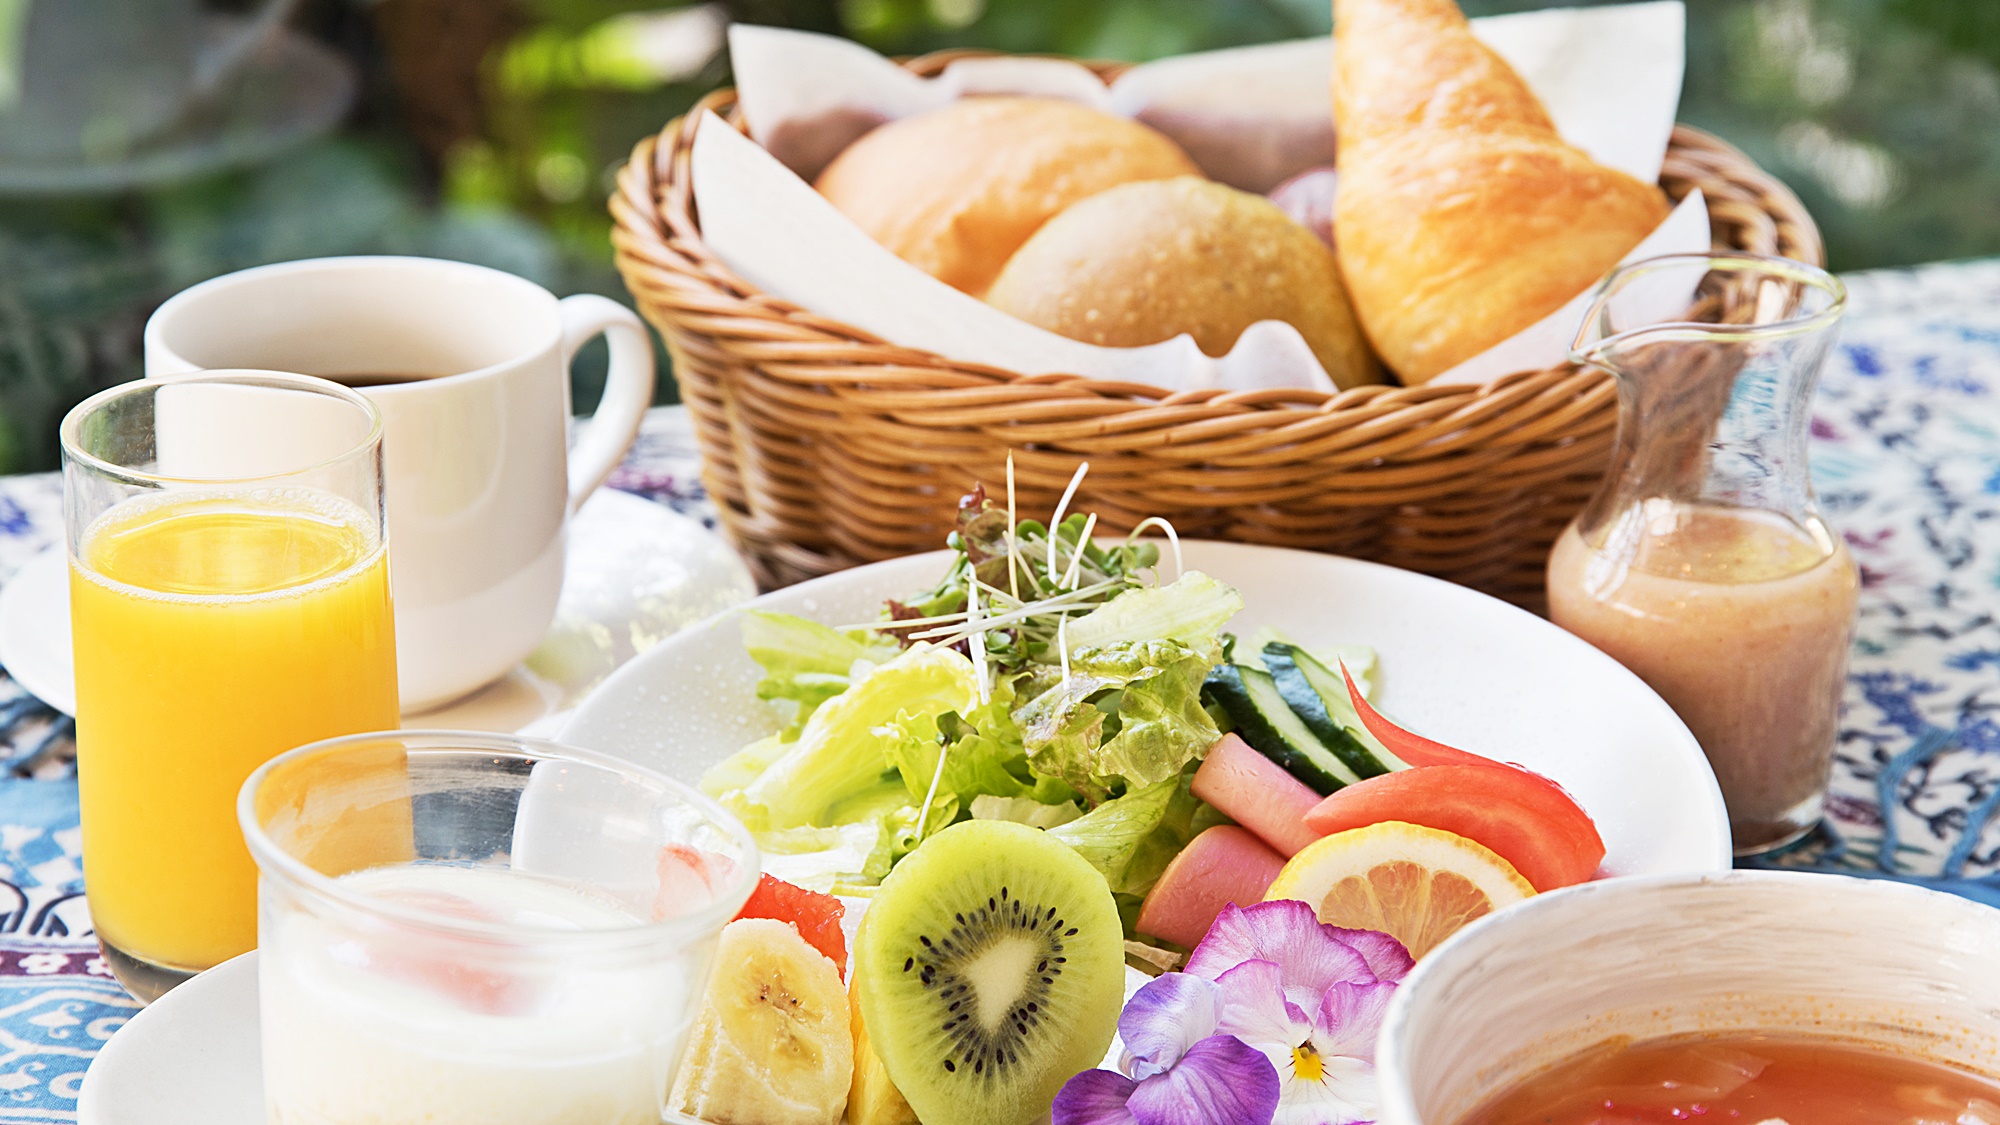 *〔朝食一例〕ふわふわのパンやサラダ、具だくさんのスープなどの朝食をお楽しみください